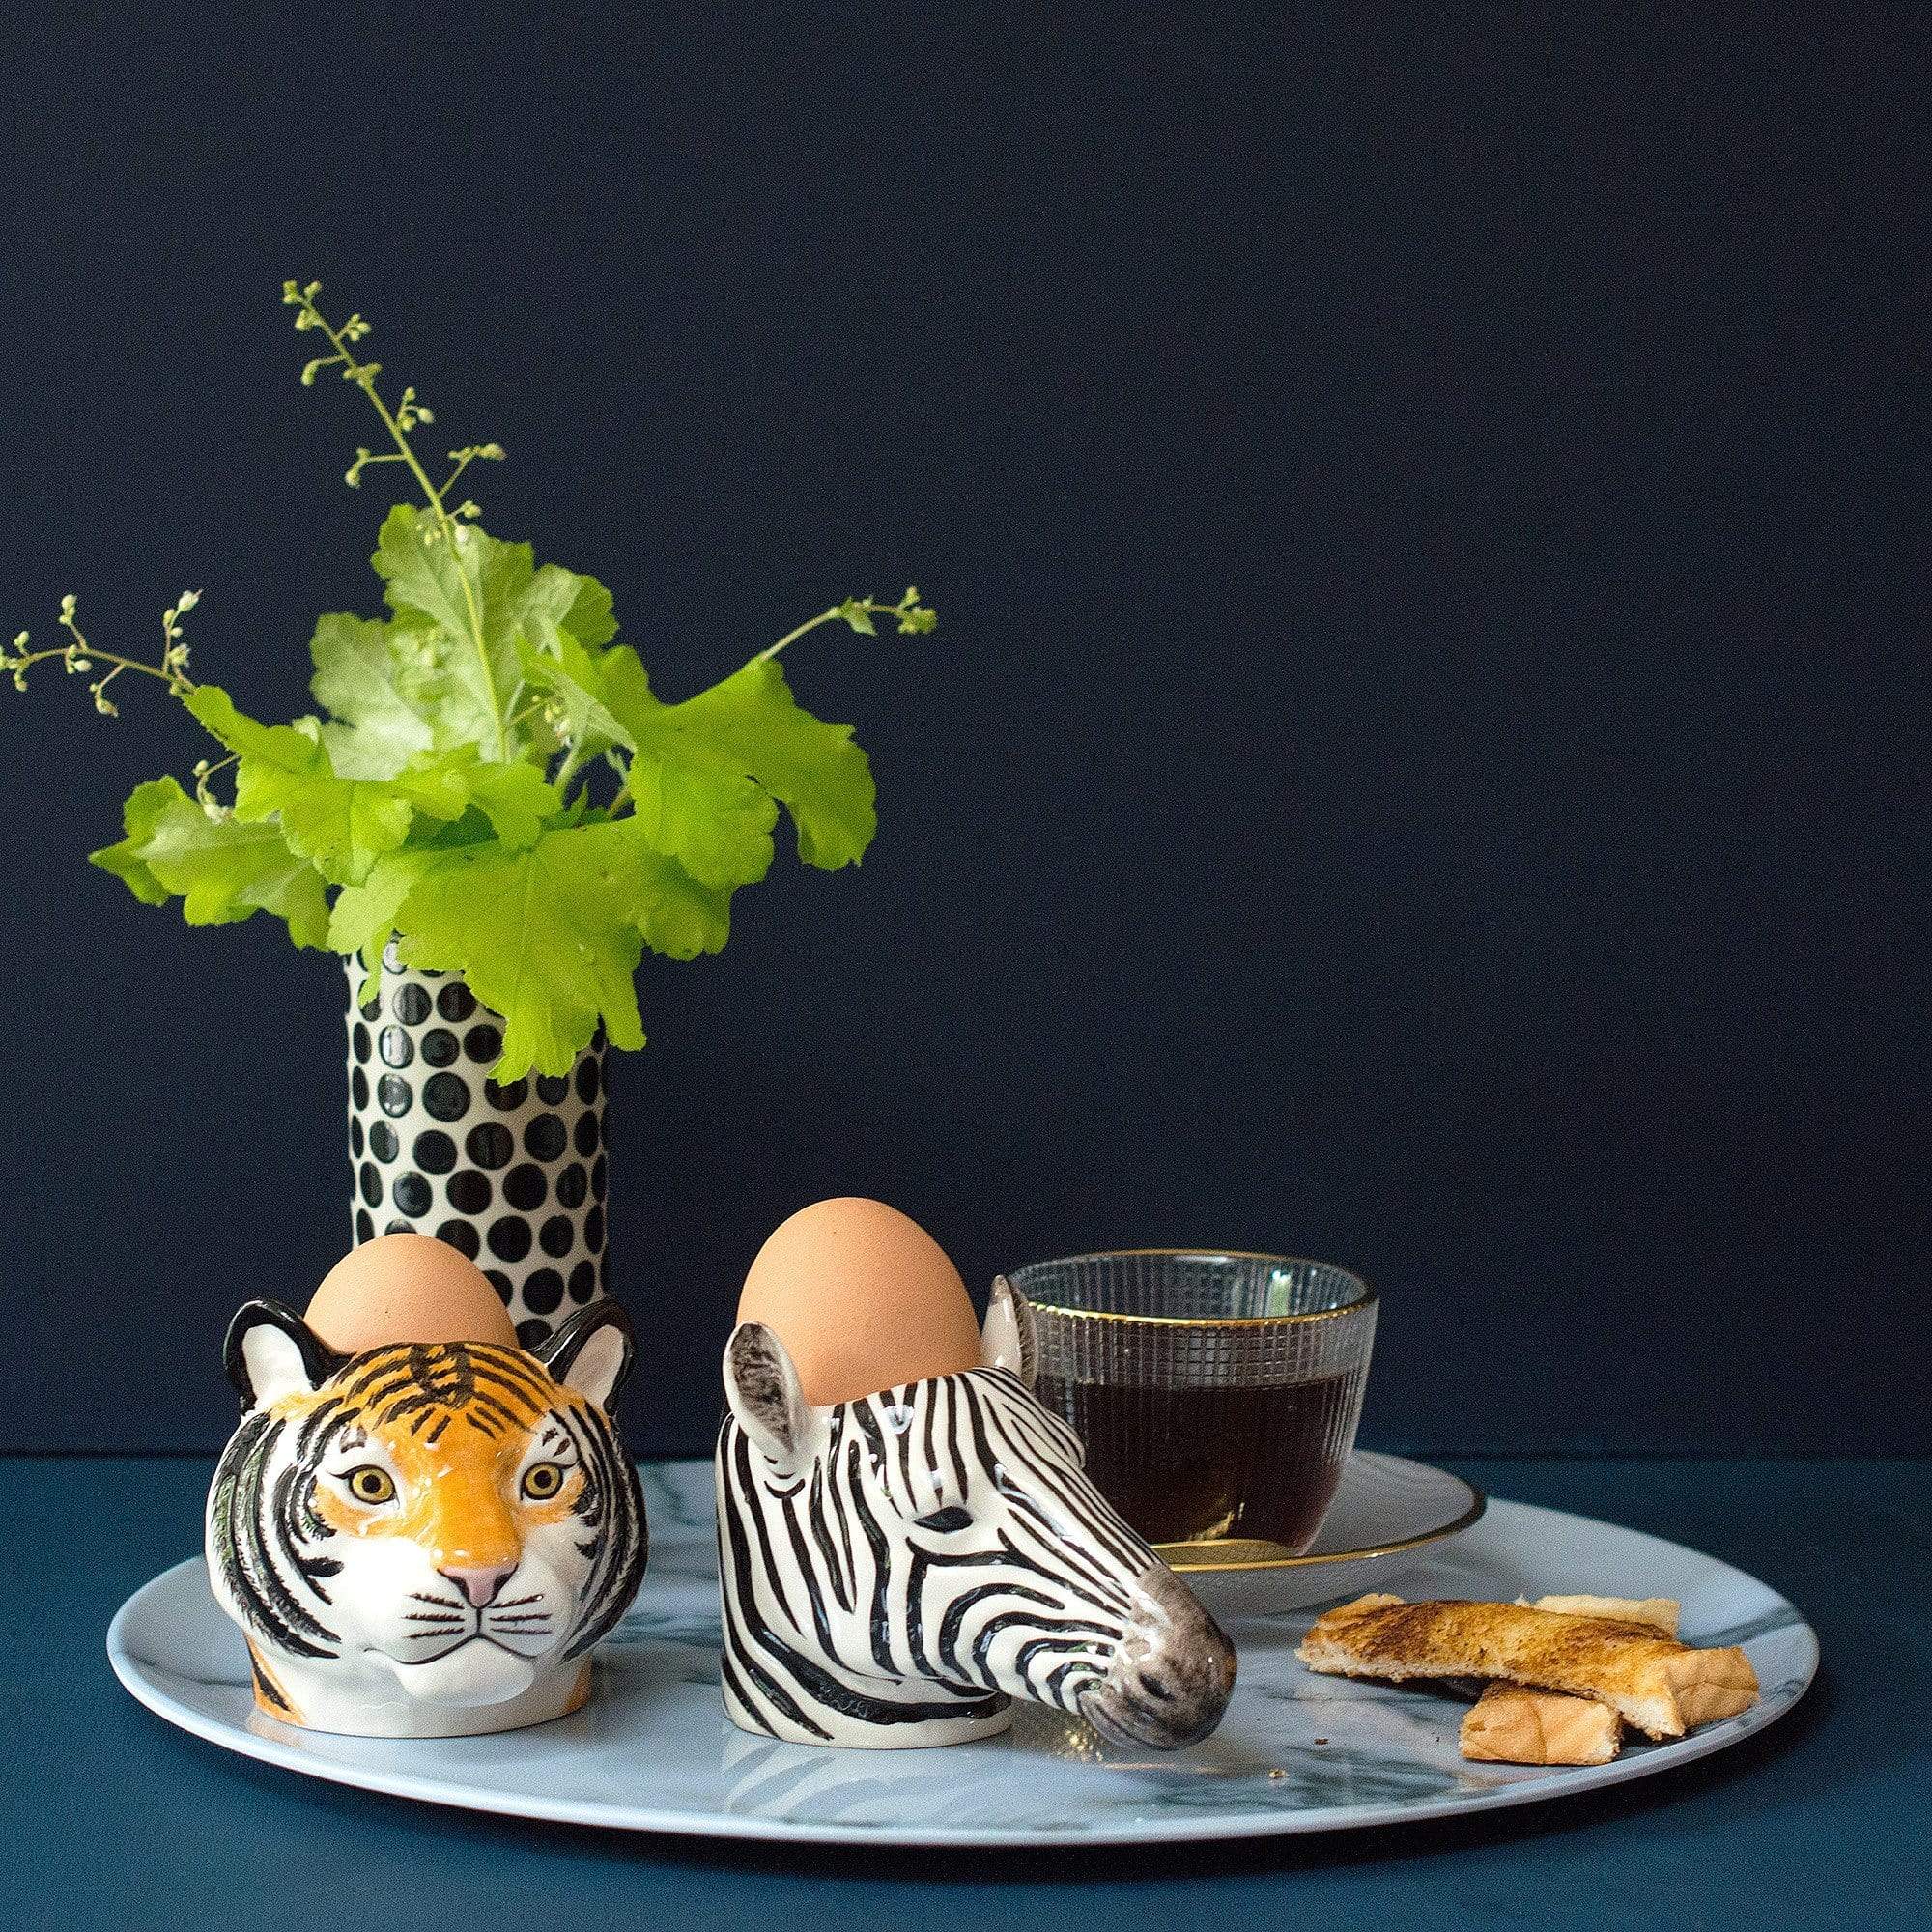 Animal Egg Cups